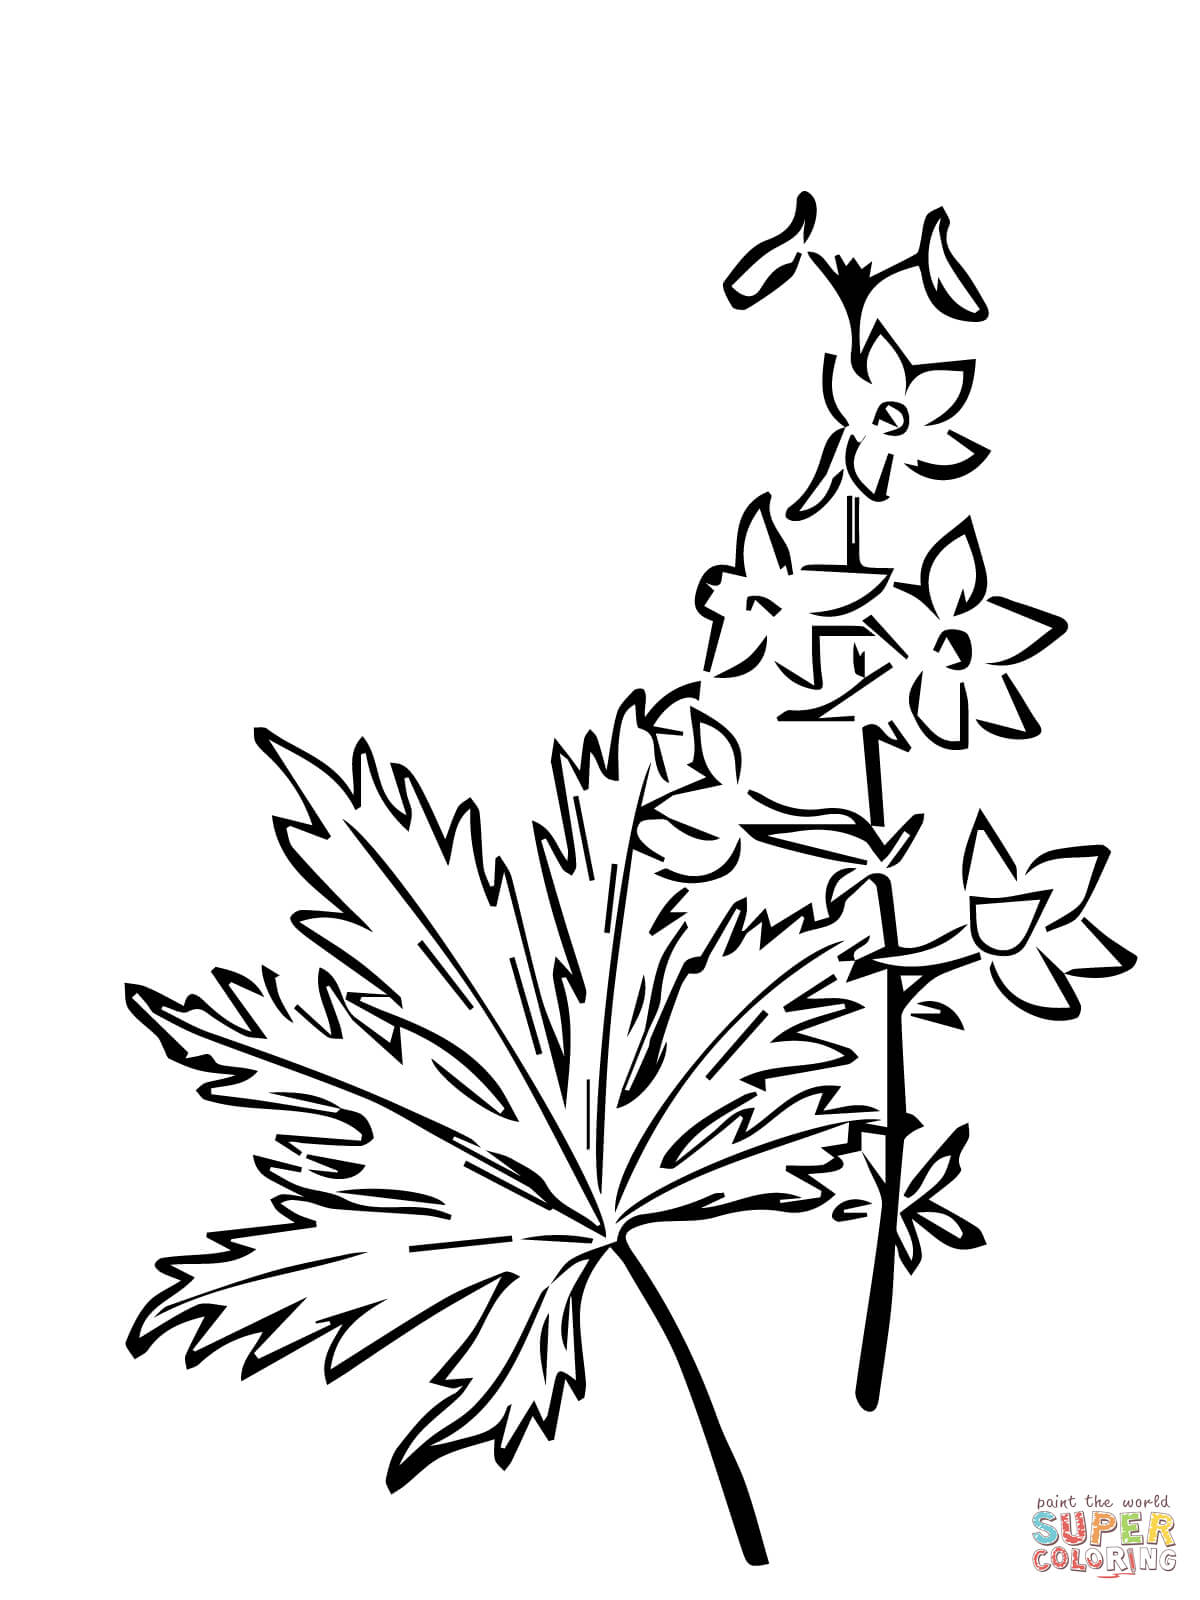 Delphinium Trolliifolium or Columbian Larkspur Coloring Pages